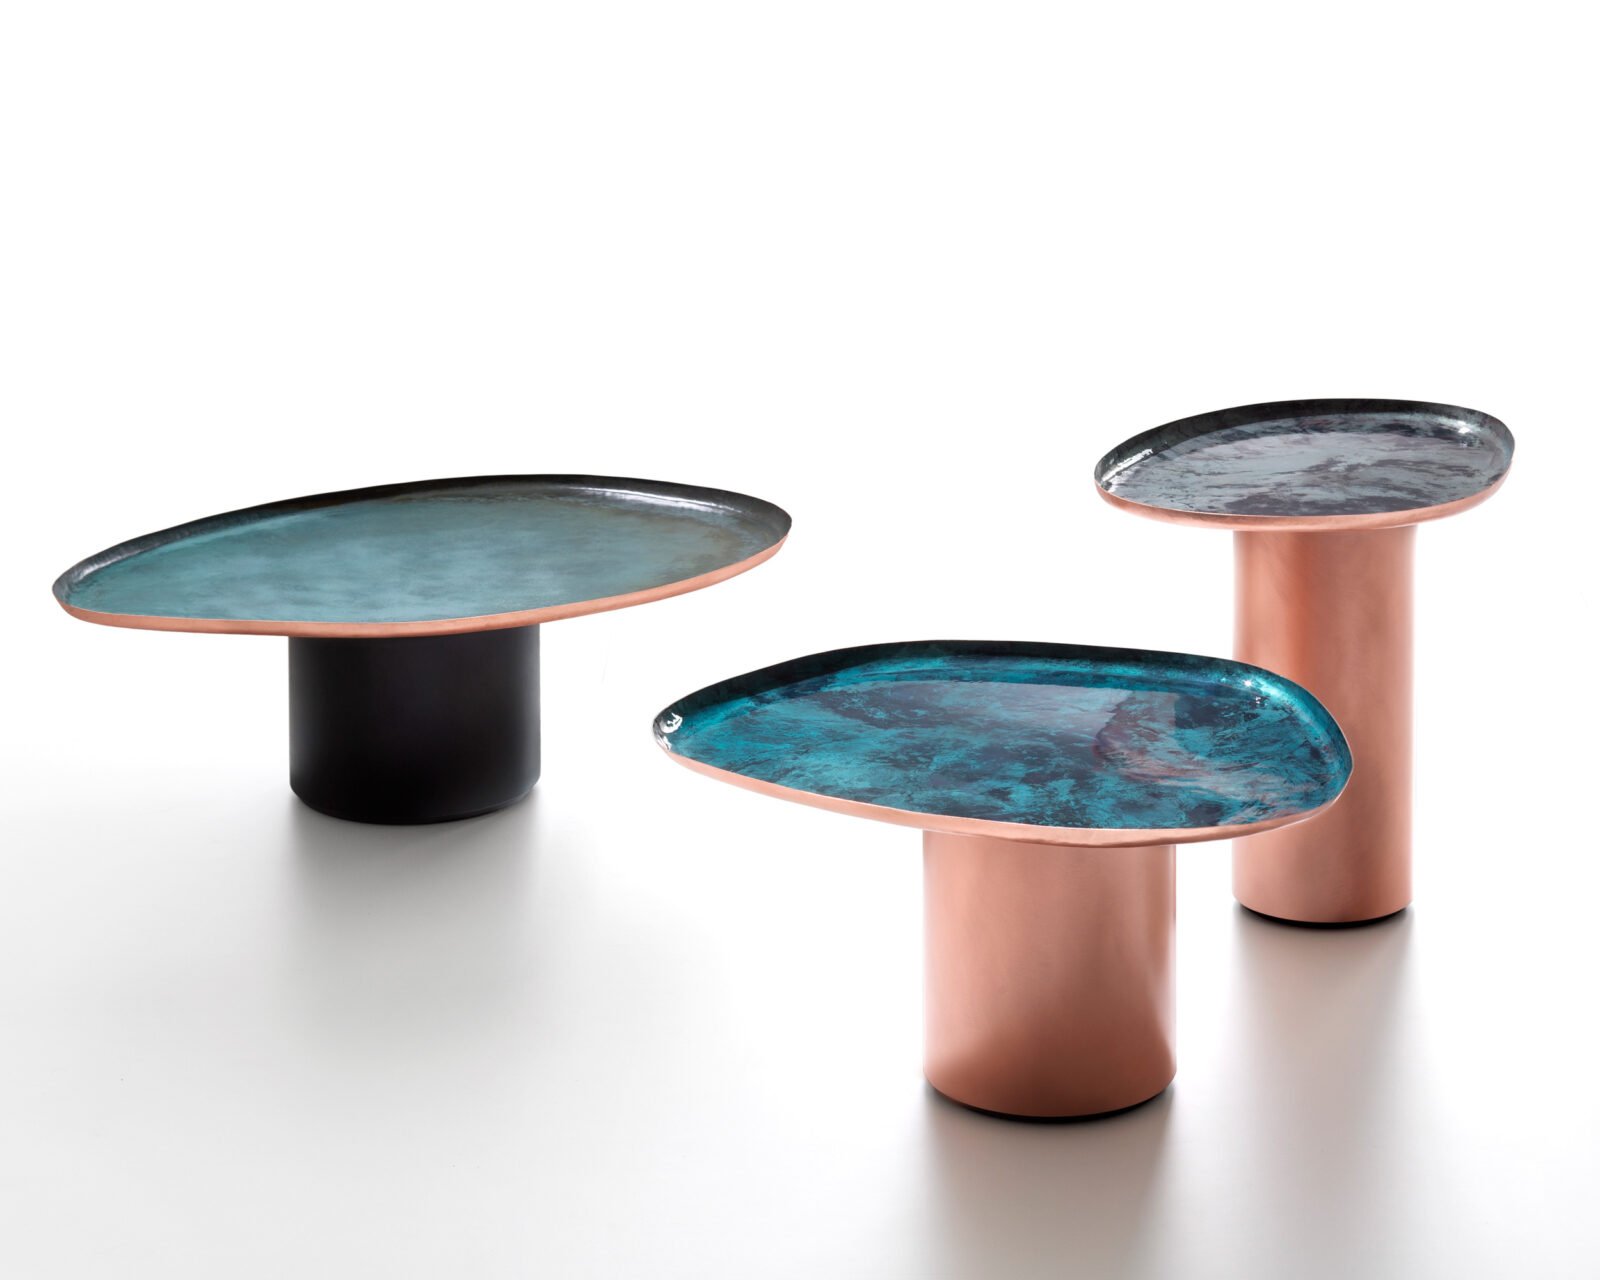 Drops Coffee Table from De Castelli, designed by Zanellato & Bortotto